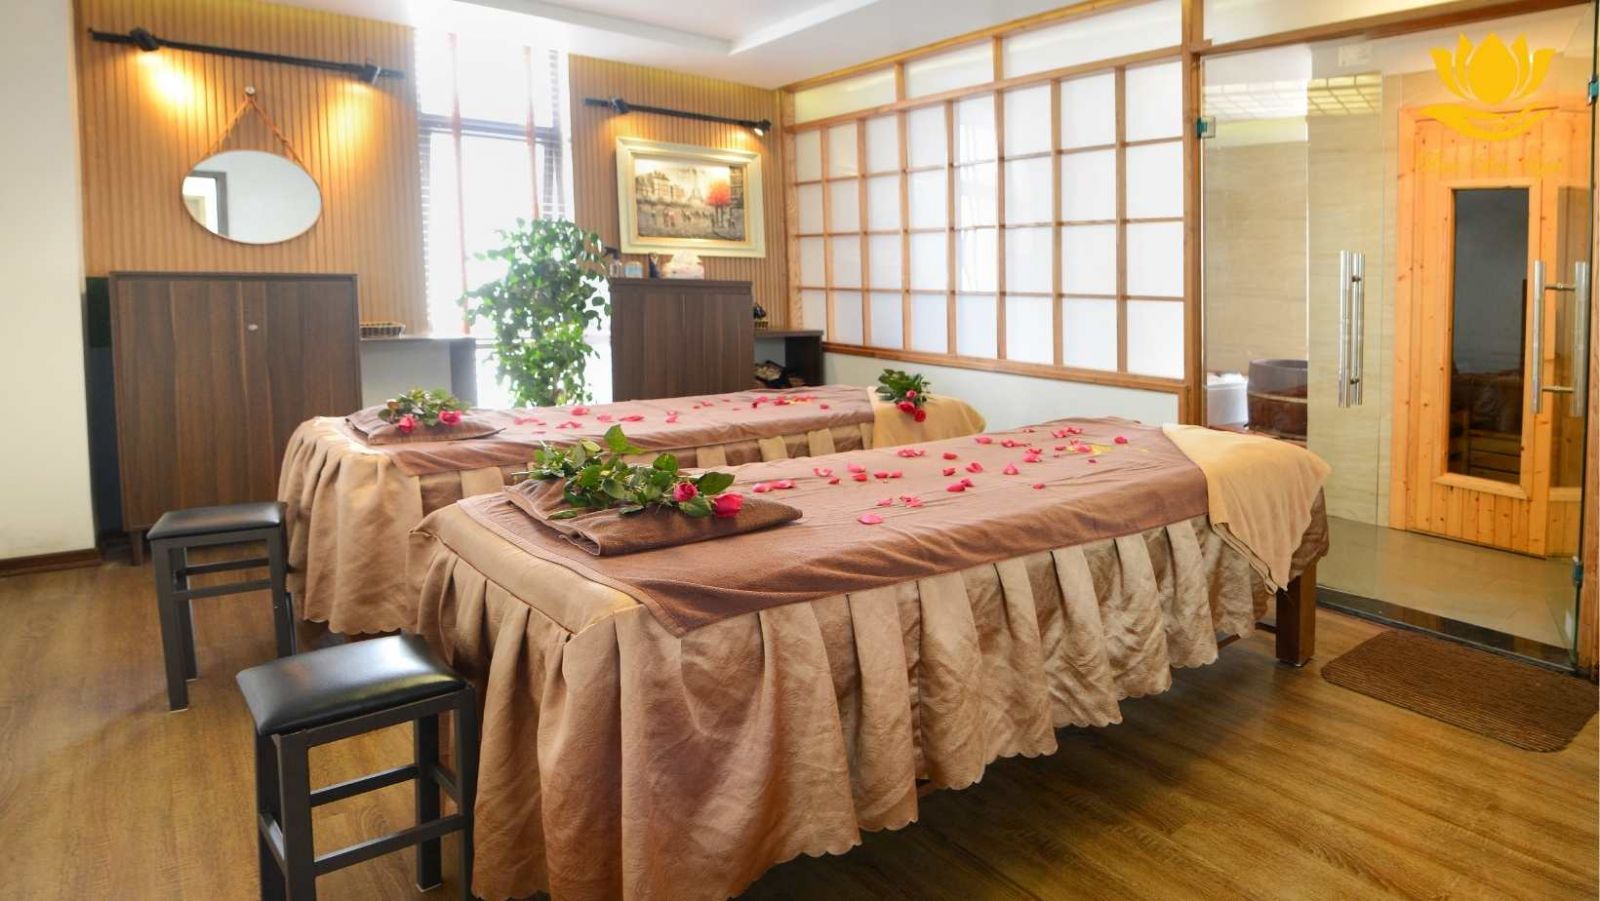 Massage cặp đôi: Không gian yên tĩnh, nhẹ nhàng và hòa quyện cùng ánh nến và tinh dầu thơm ngát mang lại cảm giác bình an, thư giãn tuyệt vời. Các kiểu massage chuyên nghiệp cũng như thủ tục chăm sóc sức khỏe phù hợp sẽ dành cho khách hàng tại đây.